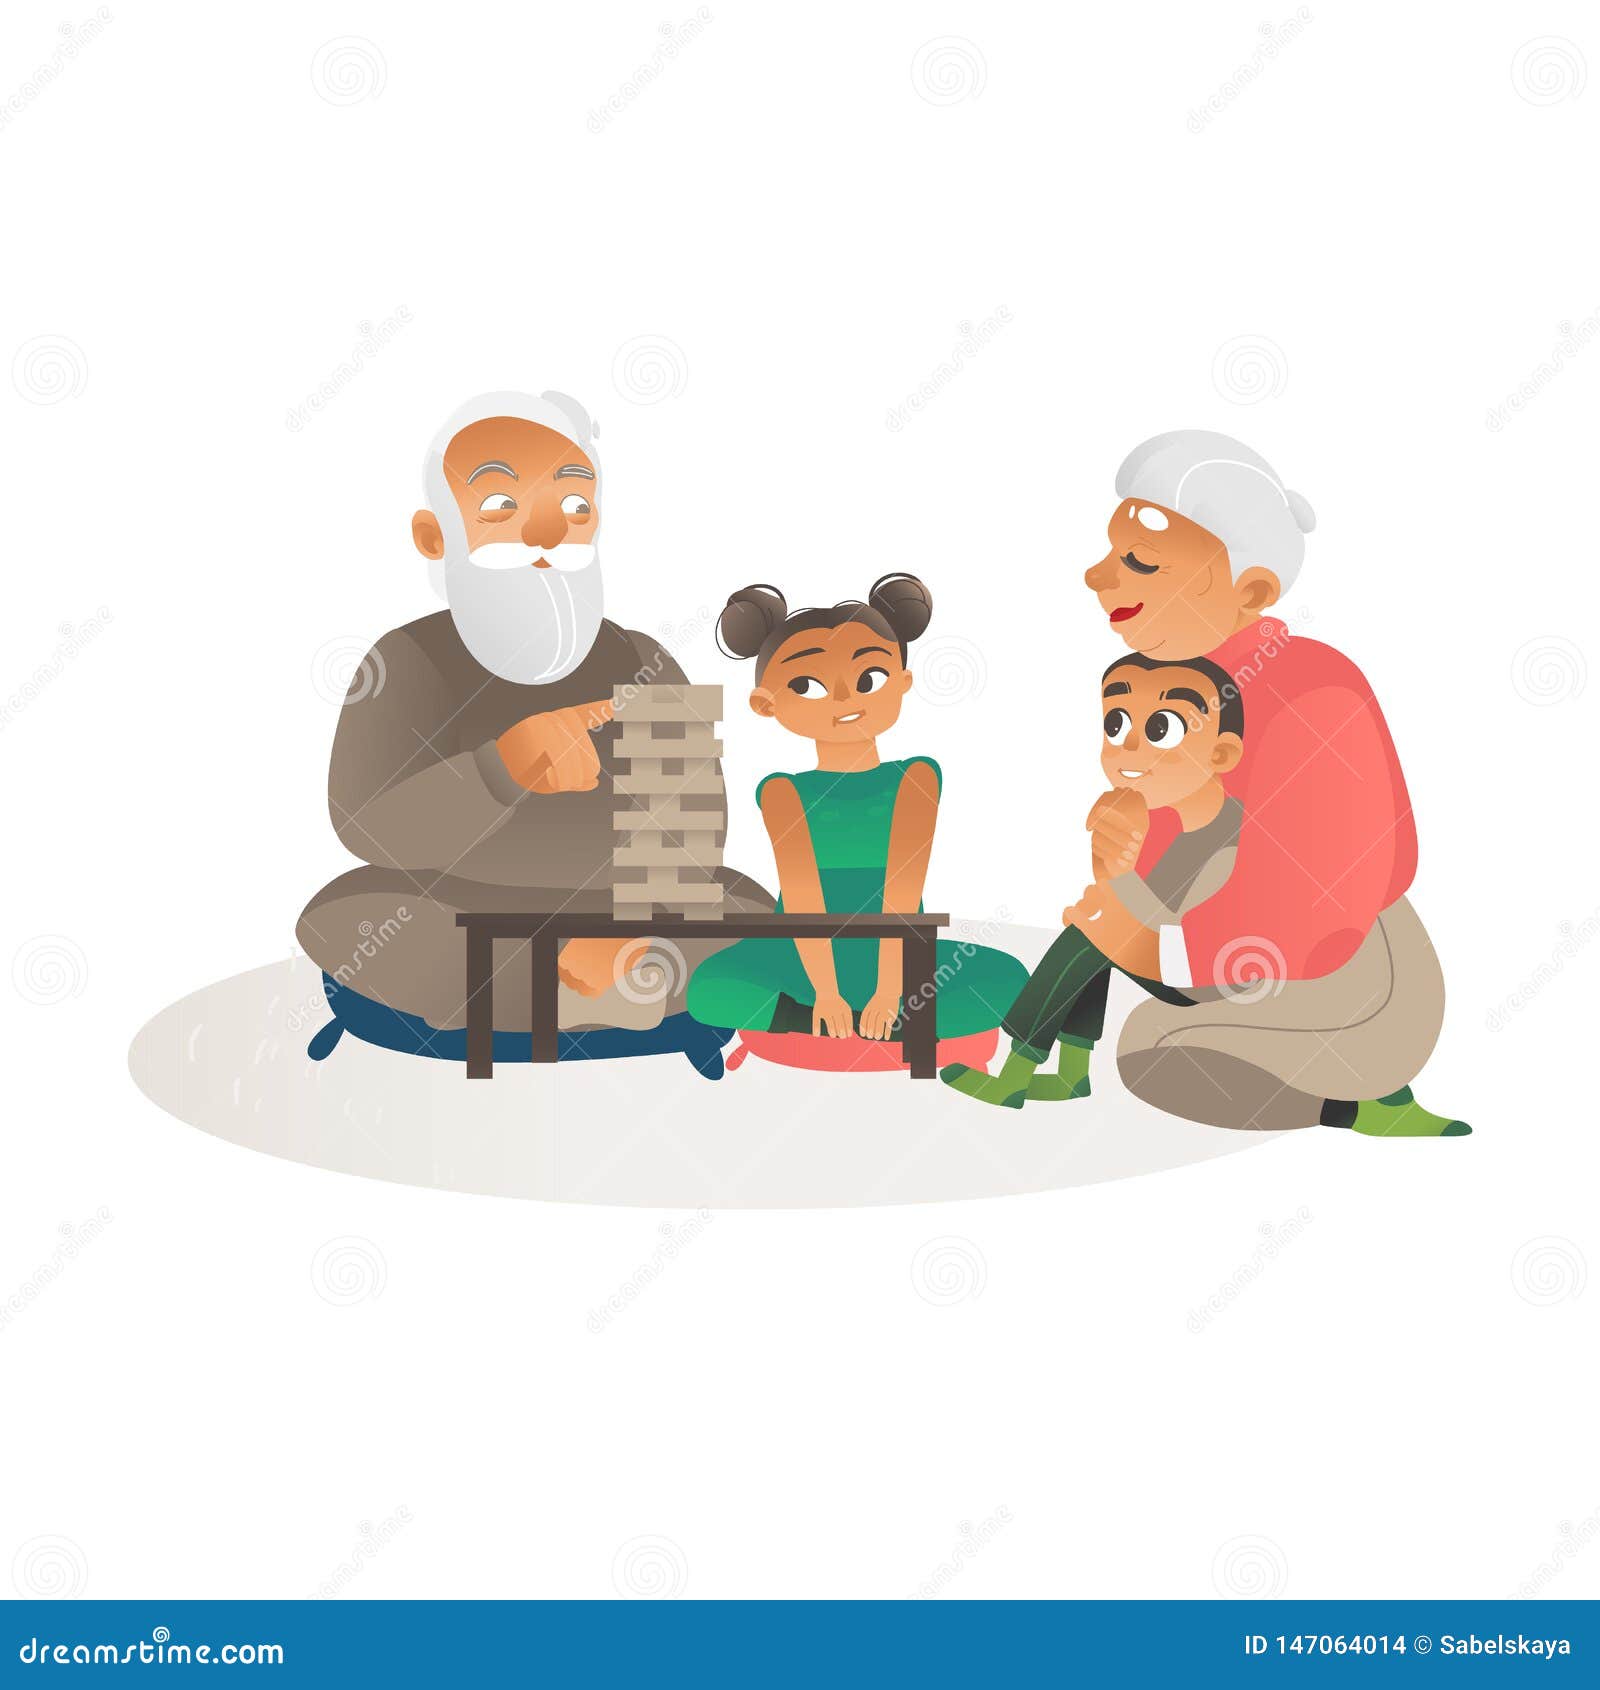 Дед с внуком играют в шашки. Дедушка с внучками иллюстрация. Игры с дедушками и бабушками иллюстрации. Мультсериалы внук и дед.